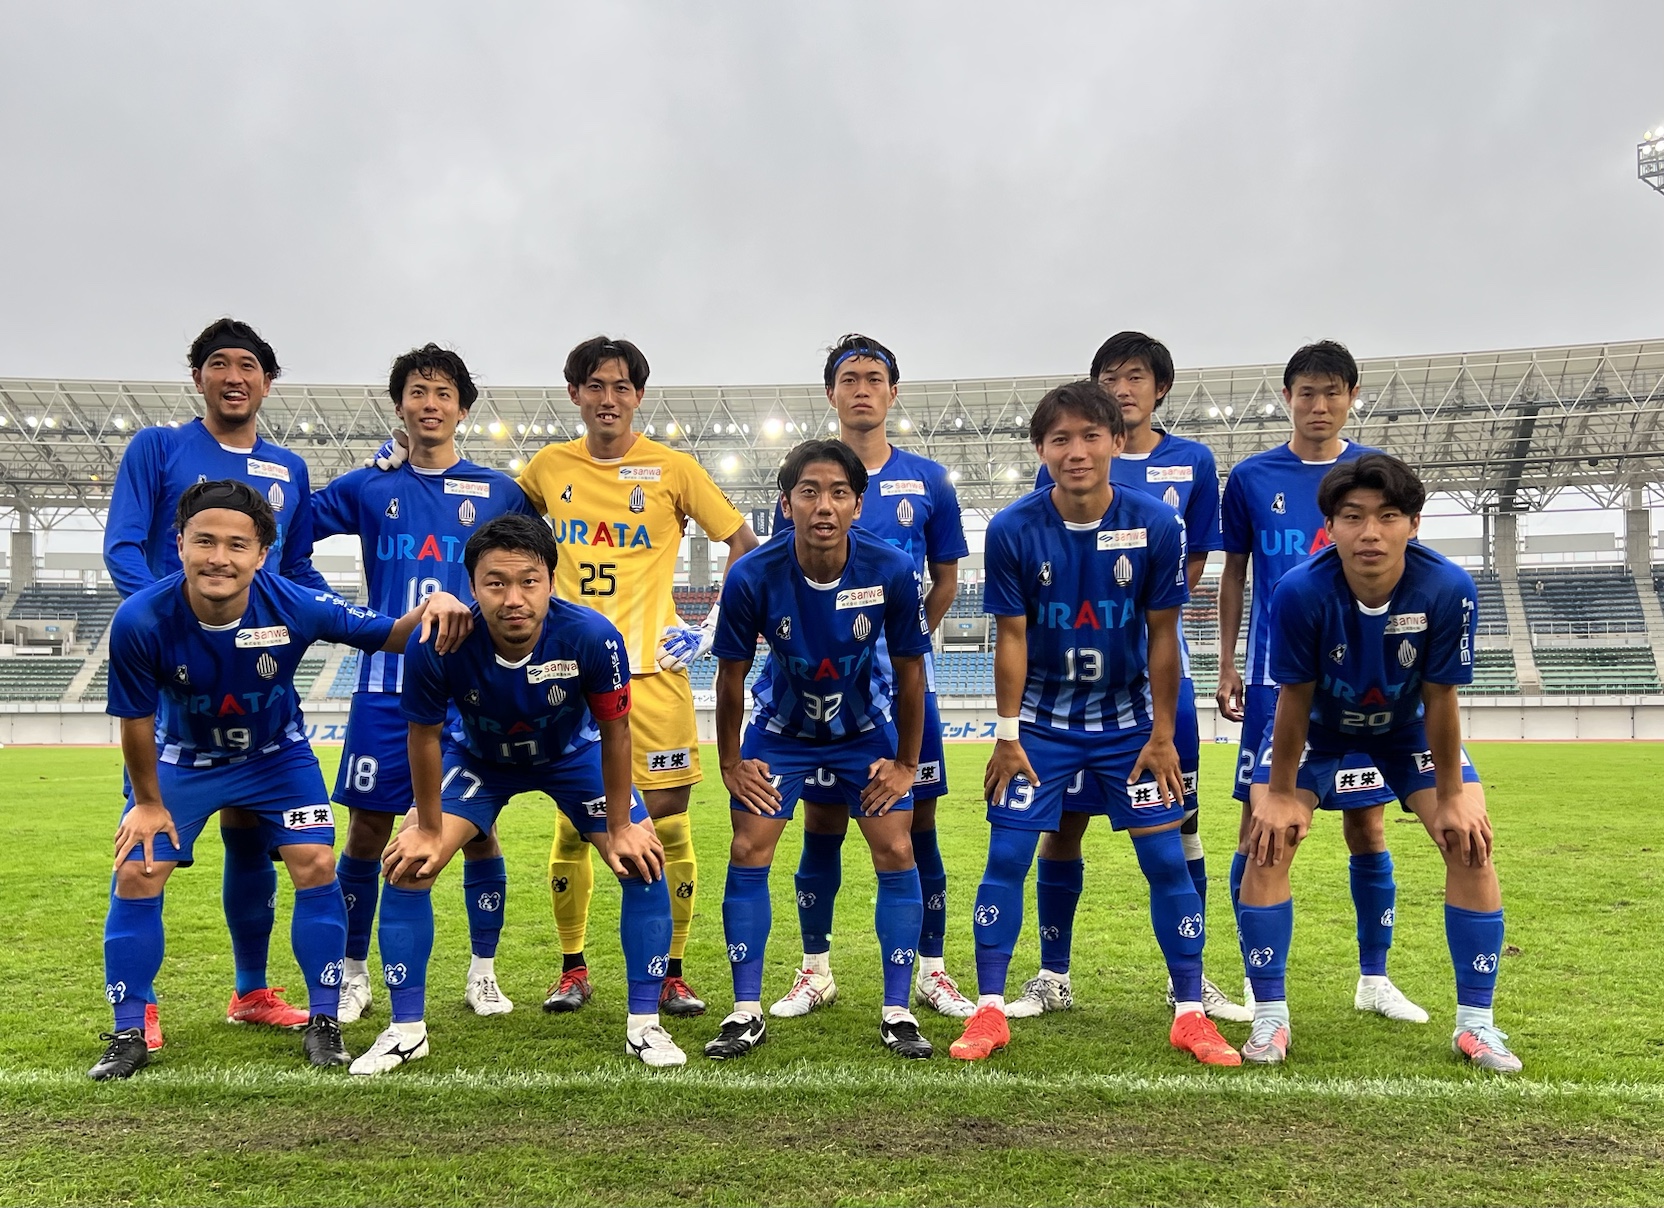 全国地域サッカーチャンピオンズリーグ 1次ラウンド vs 福山シティFC